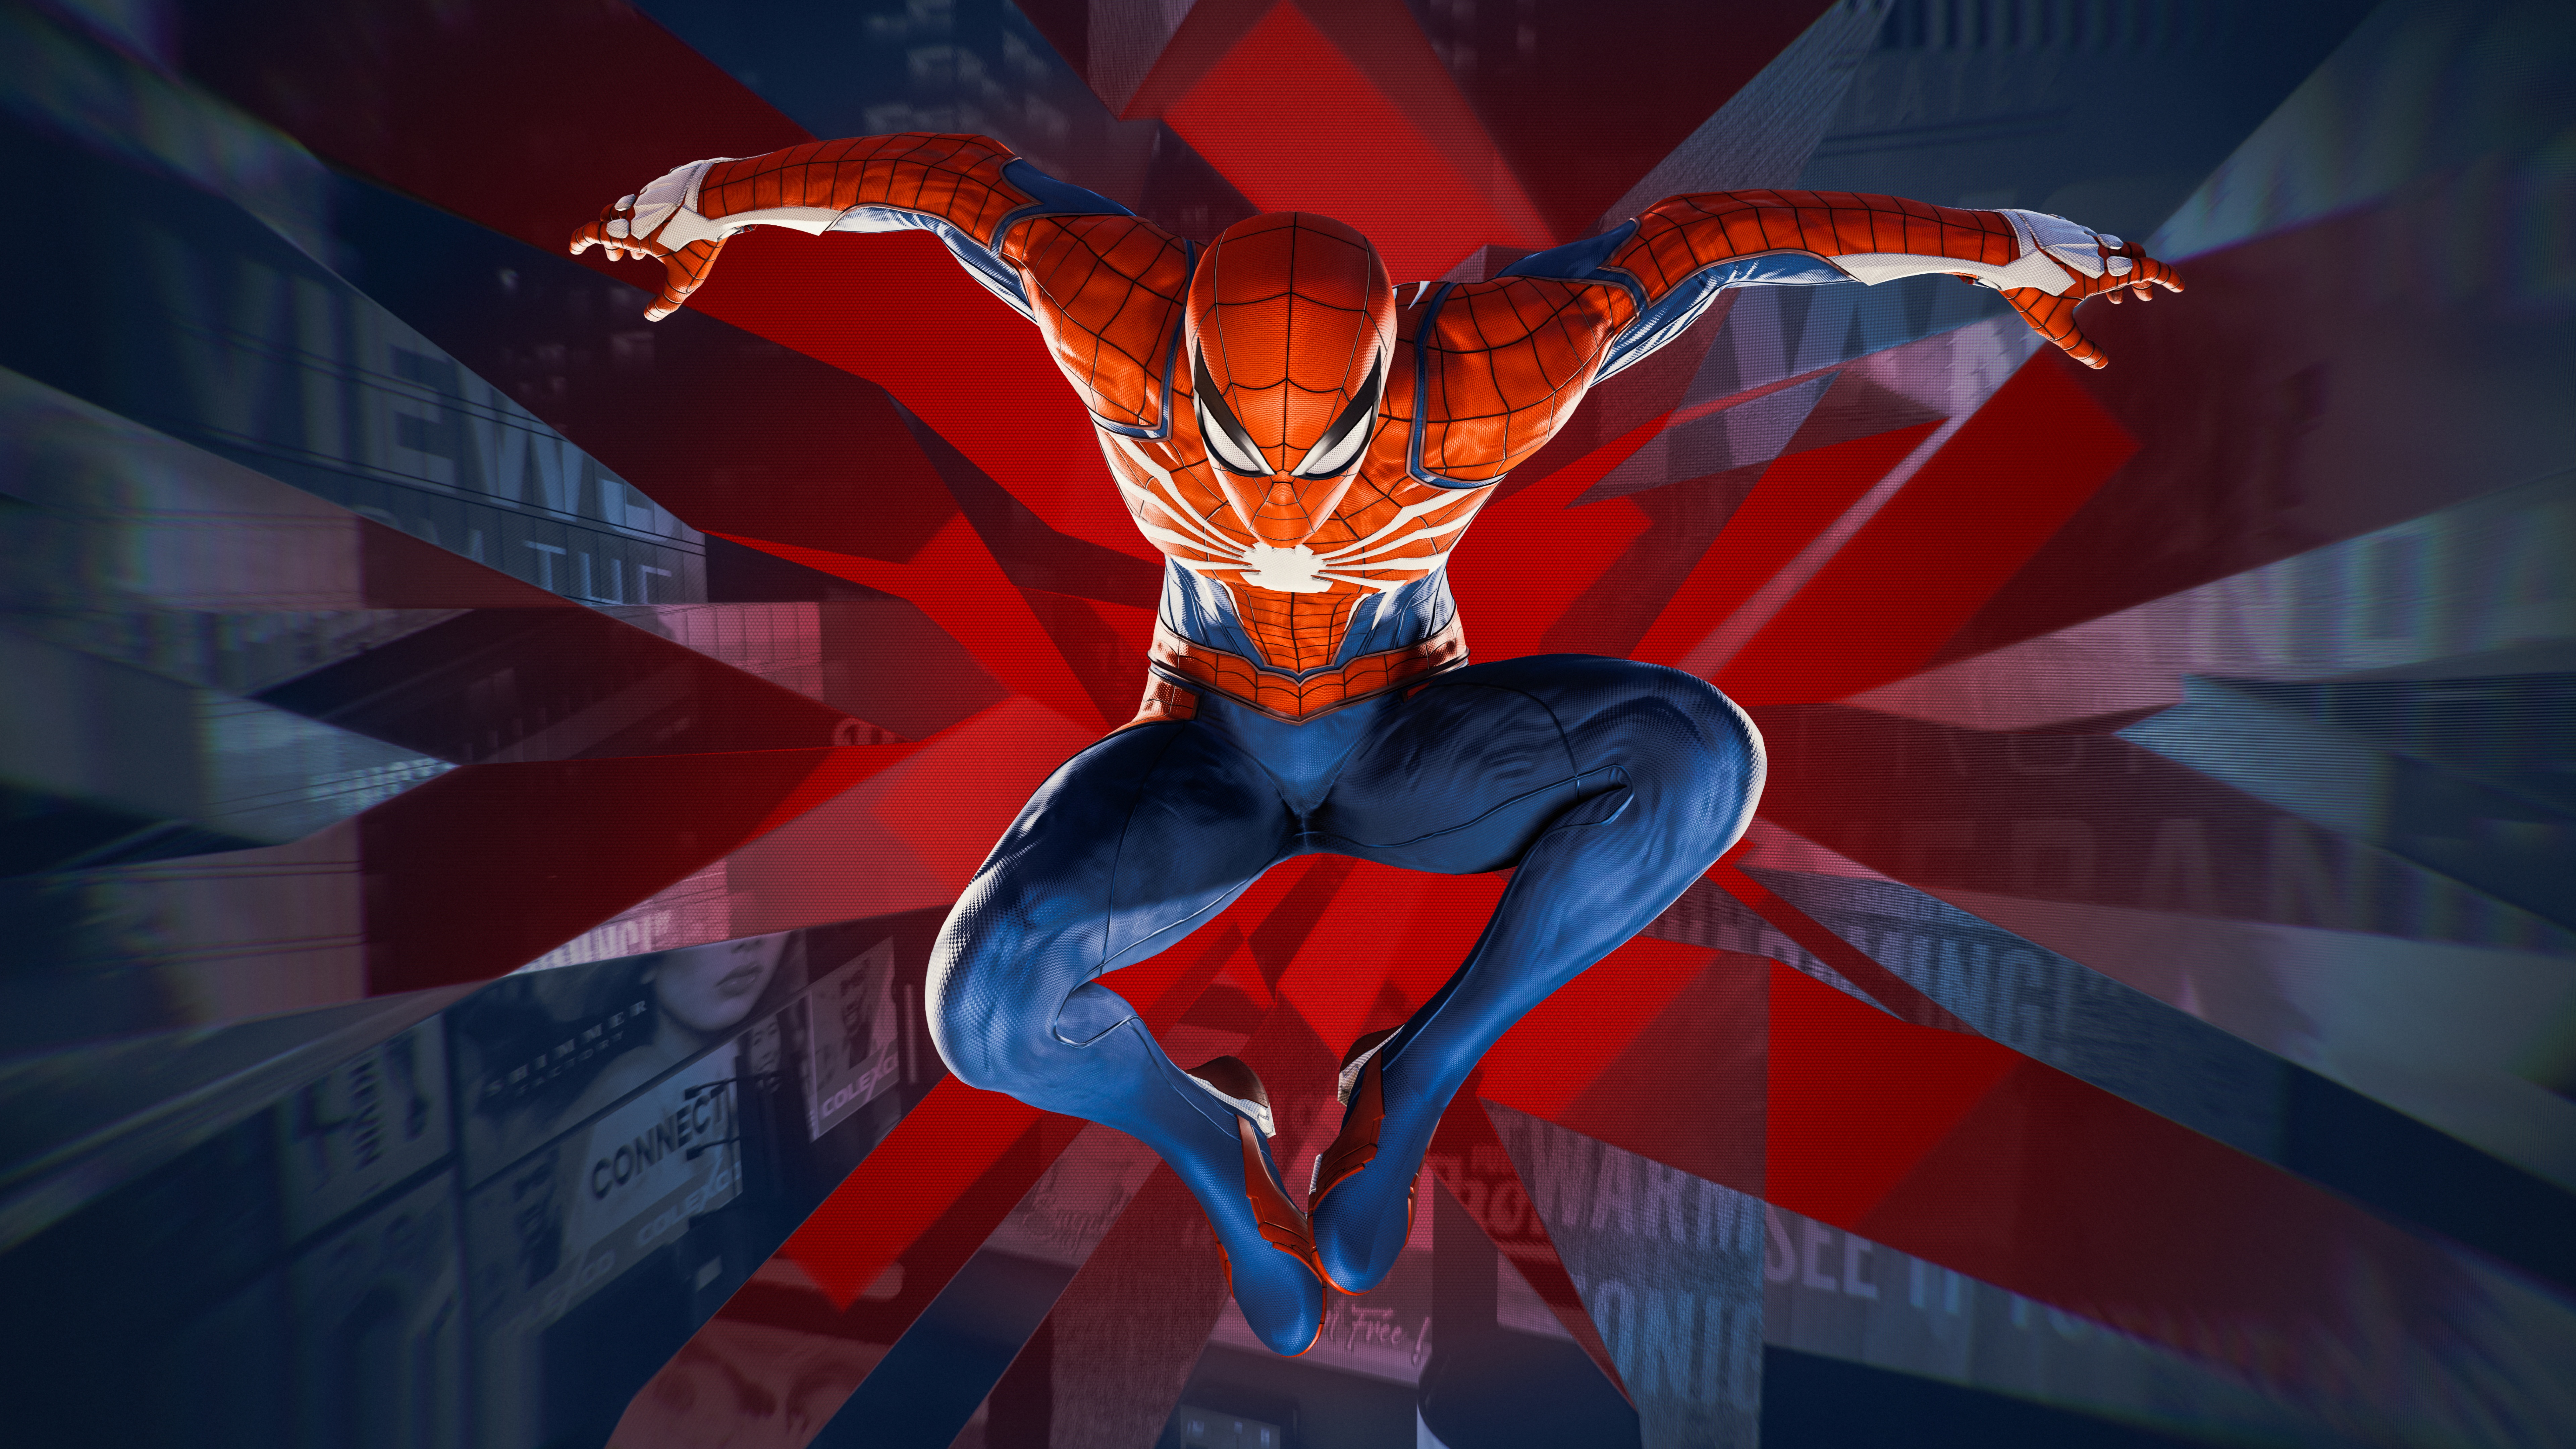 Vừa có 1 công cụ hấp dẫn dành cho các tín đồ của Spider-Man và máy tính: Spider-Man 4K wallpaper PC game. Hình nền 4K đẹp mắt với chất lượng hình ảnh sắc nét, tối ưu hoá để sử dụng trên máy tính của bạn. Bày tỏ tình yêu của bạn dành cho trò chơi này và Spider-Man bằng cách sử dụng hình nền độc đáo này.